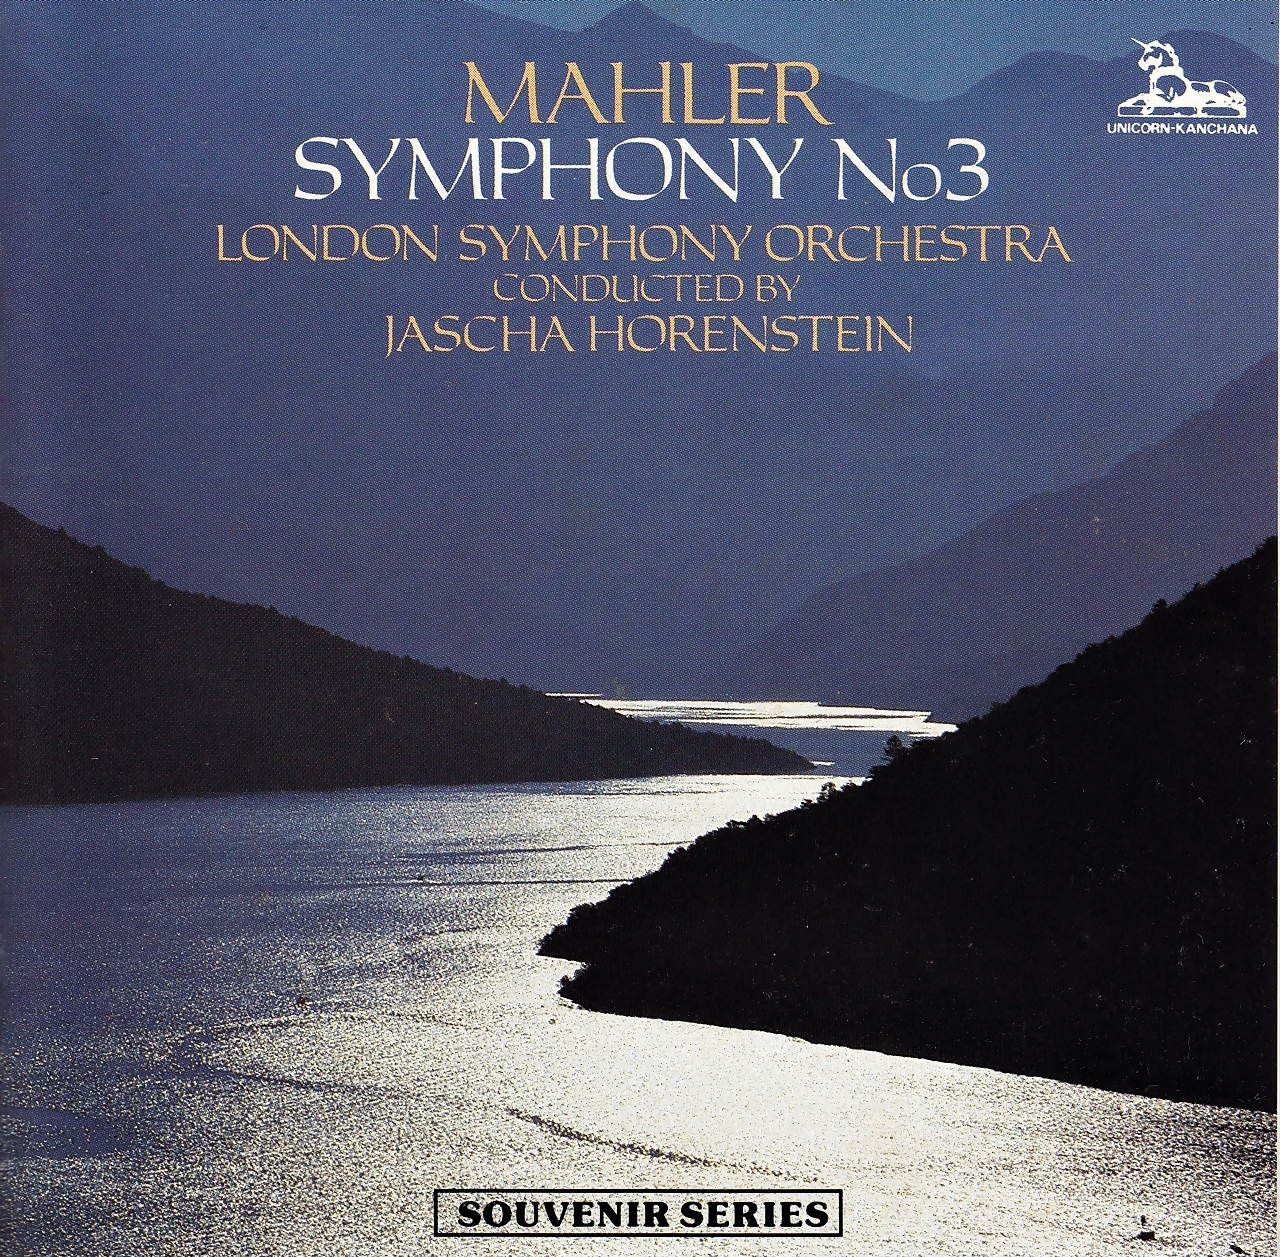 CONTEMOS CON UNA IMAGEN Mahler+-+Sinf.+n%C2%BA+3+-+Horenstein+-+Portada